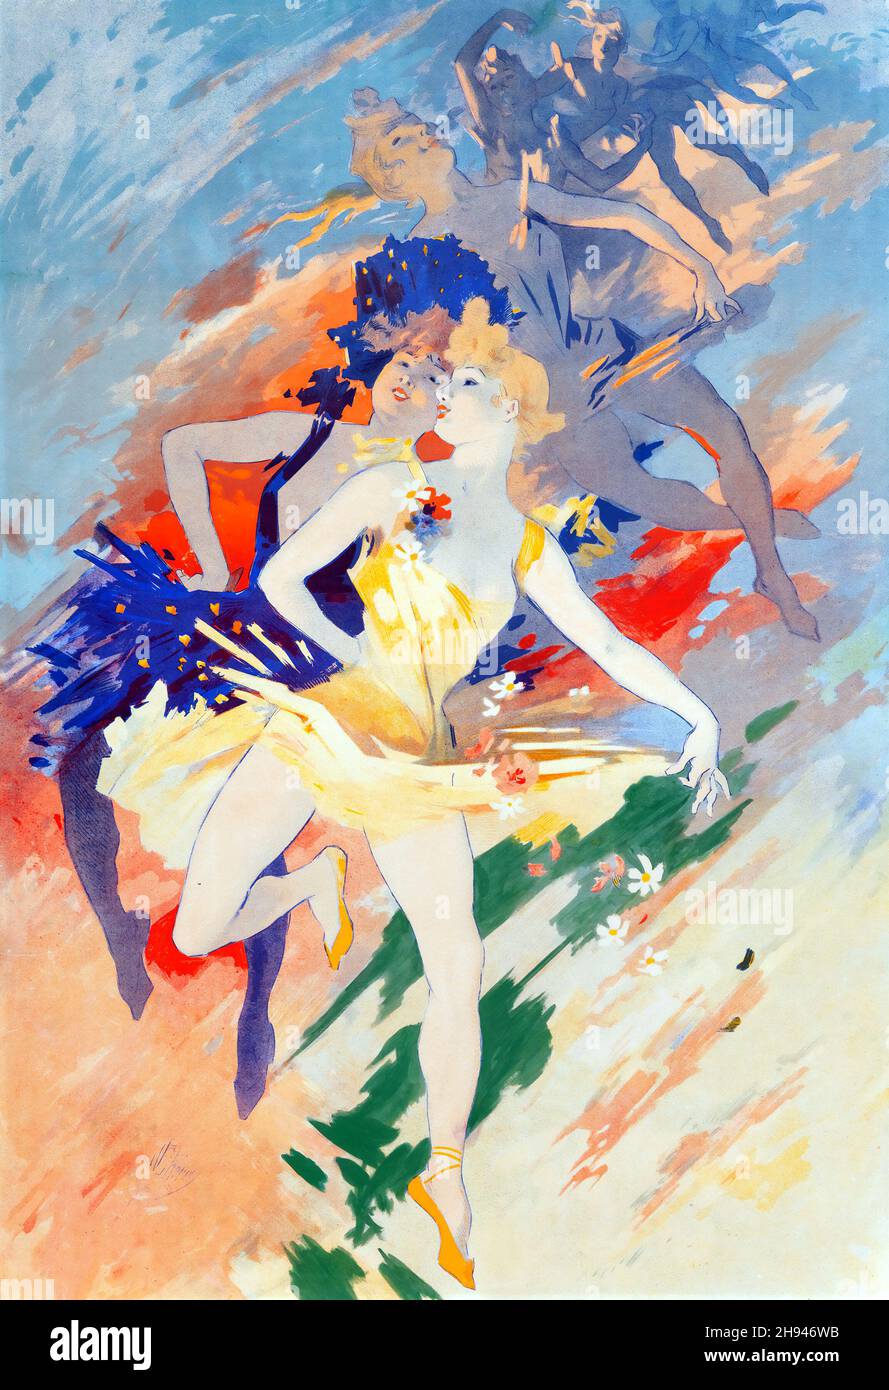 La danse, l'art de l'affiche de Jules Chéret (1836-1932).Français.1900. Banque D'Images